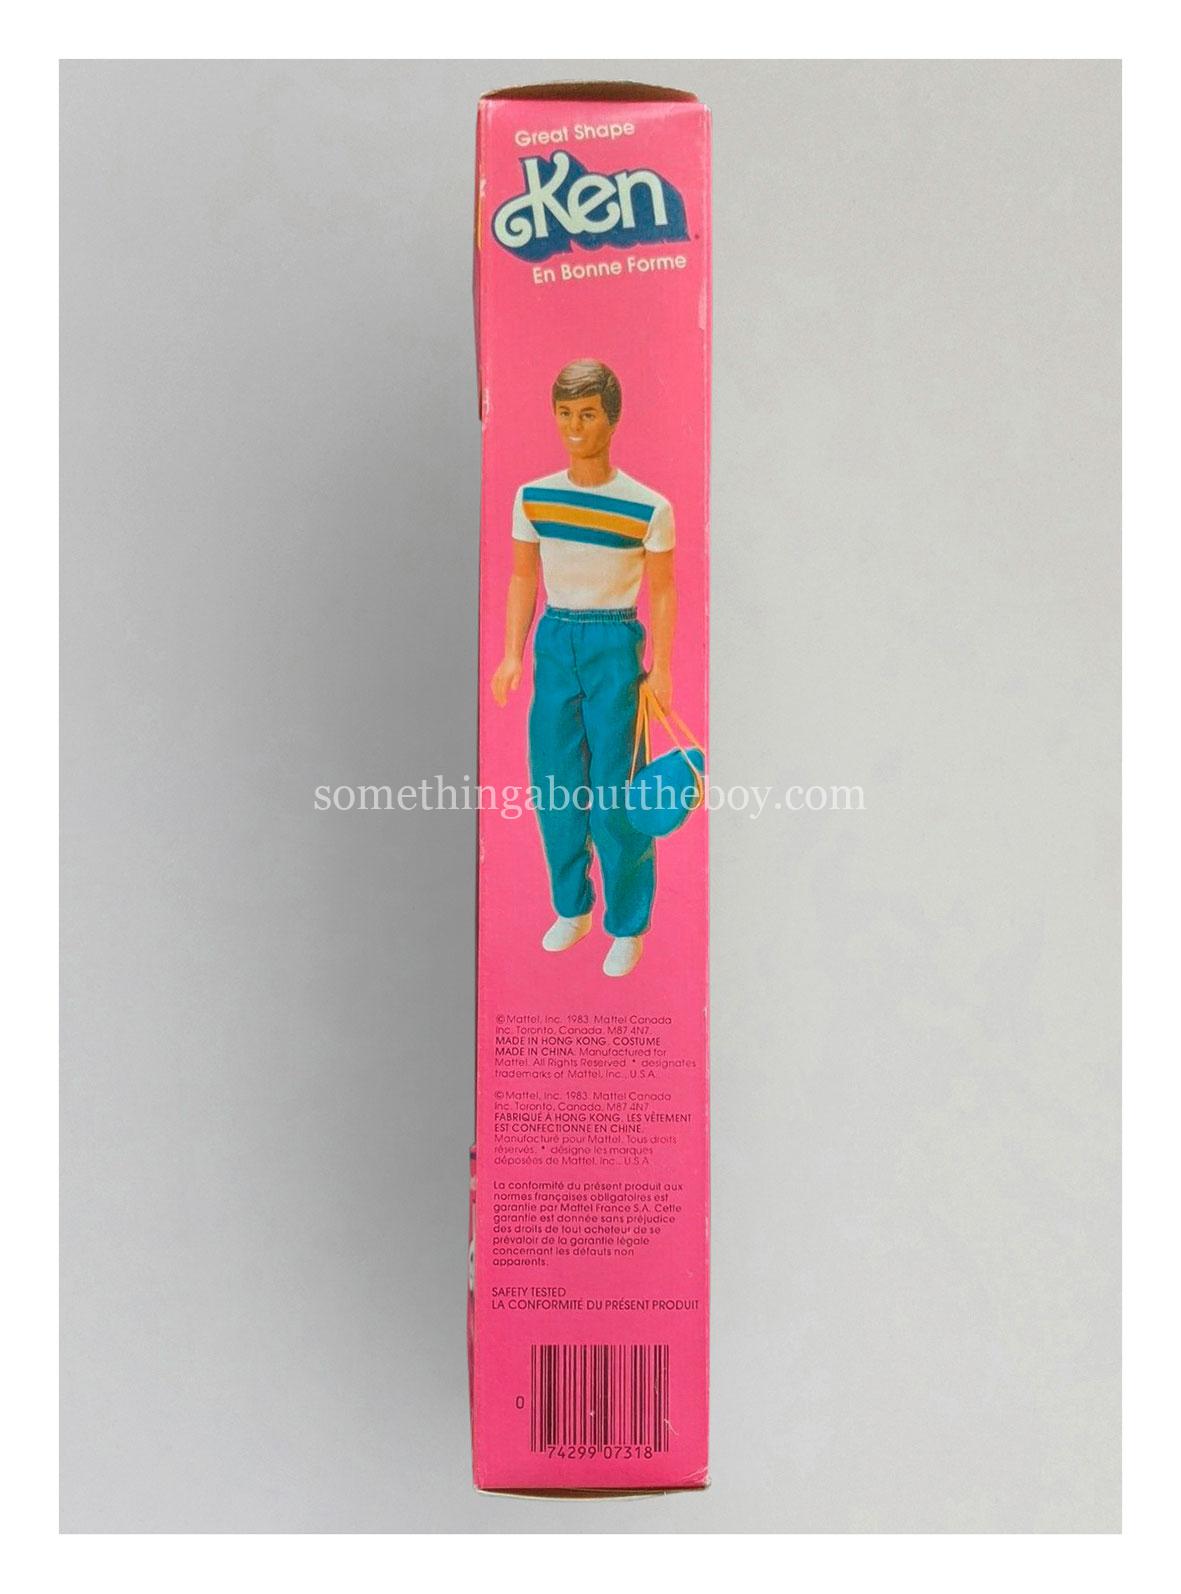 1984 #7318 Great Shape Ken Canadian packaging